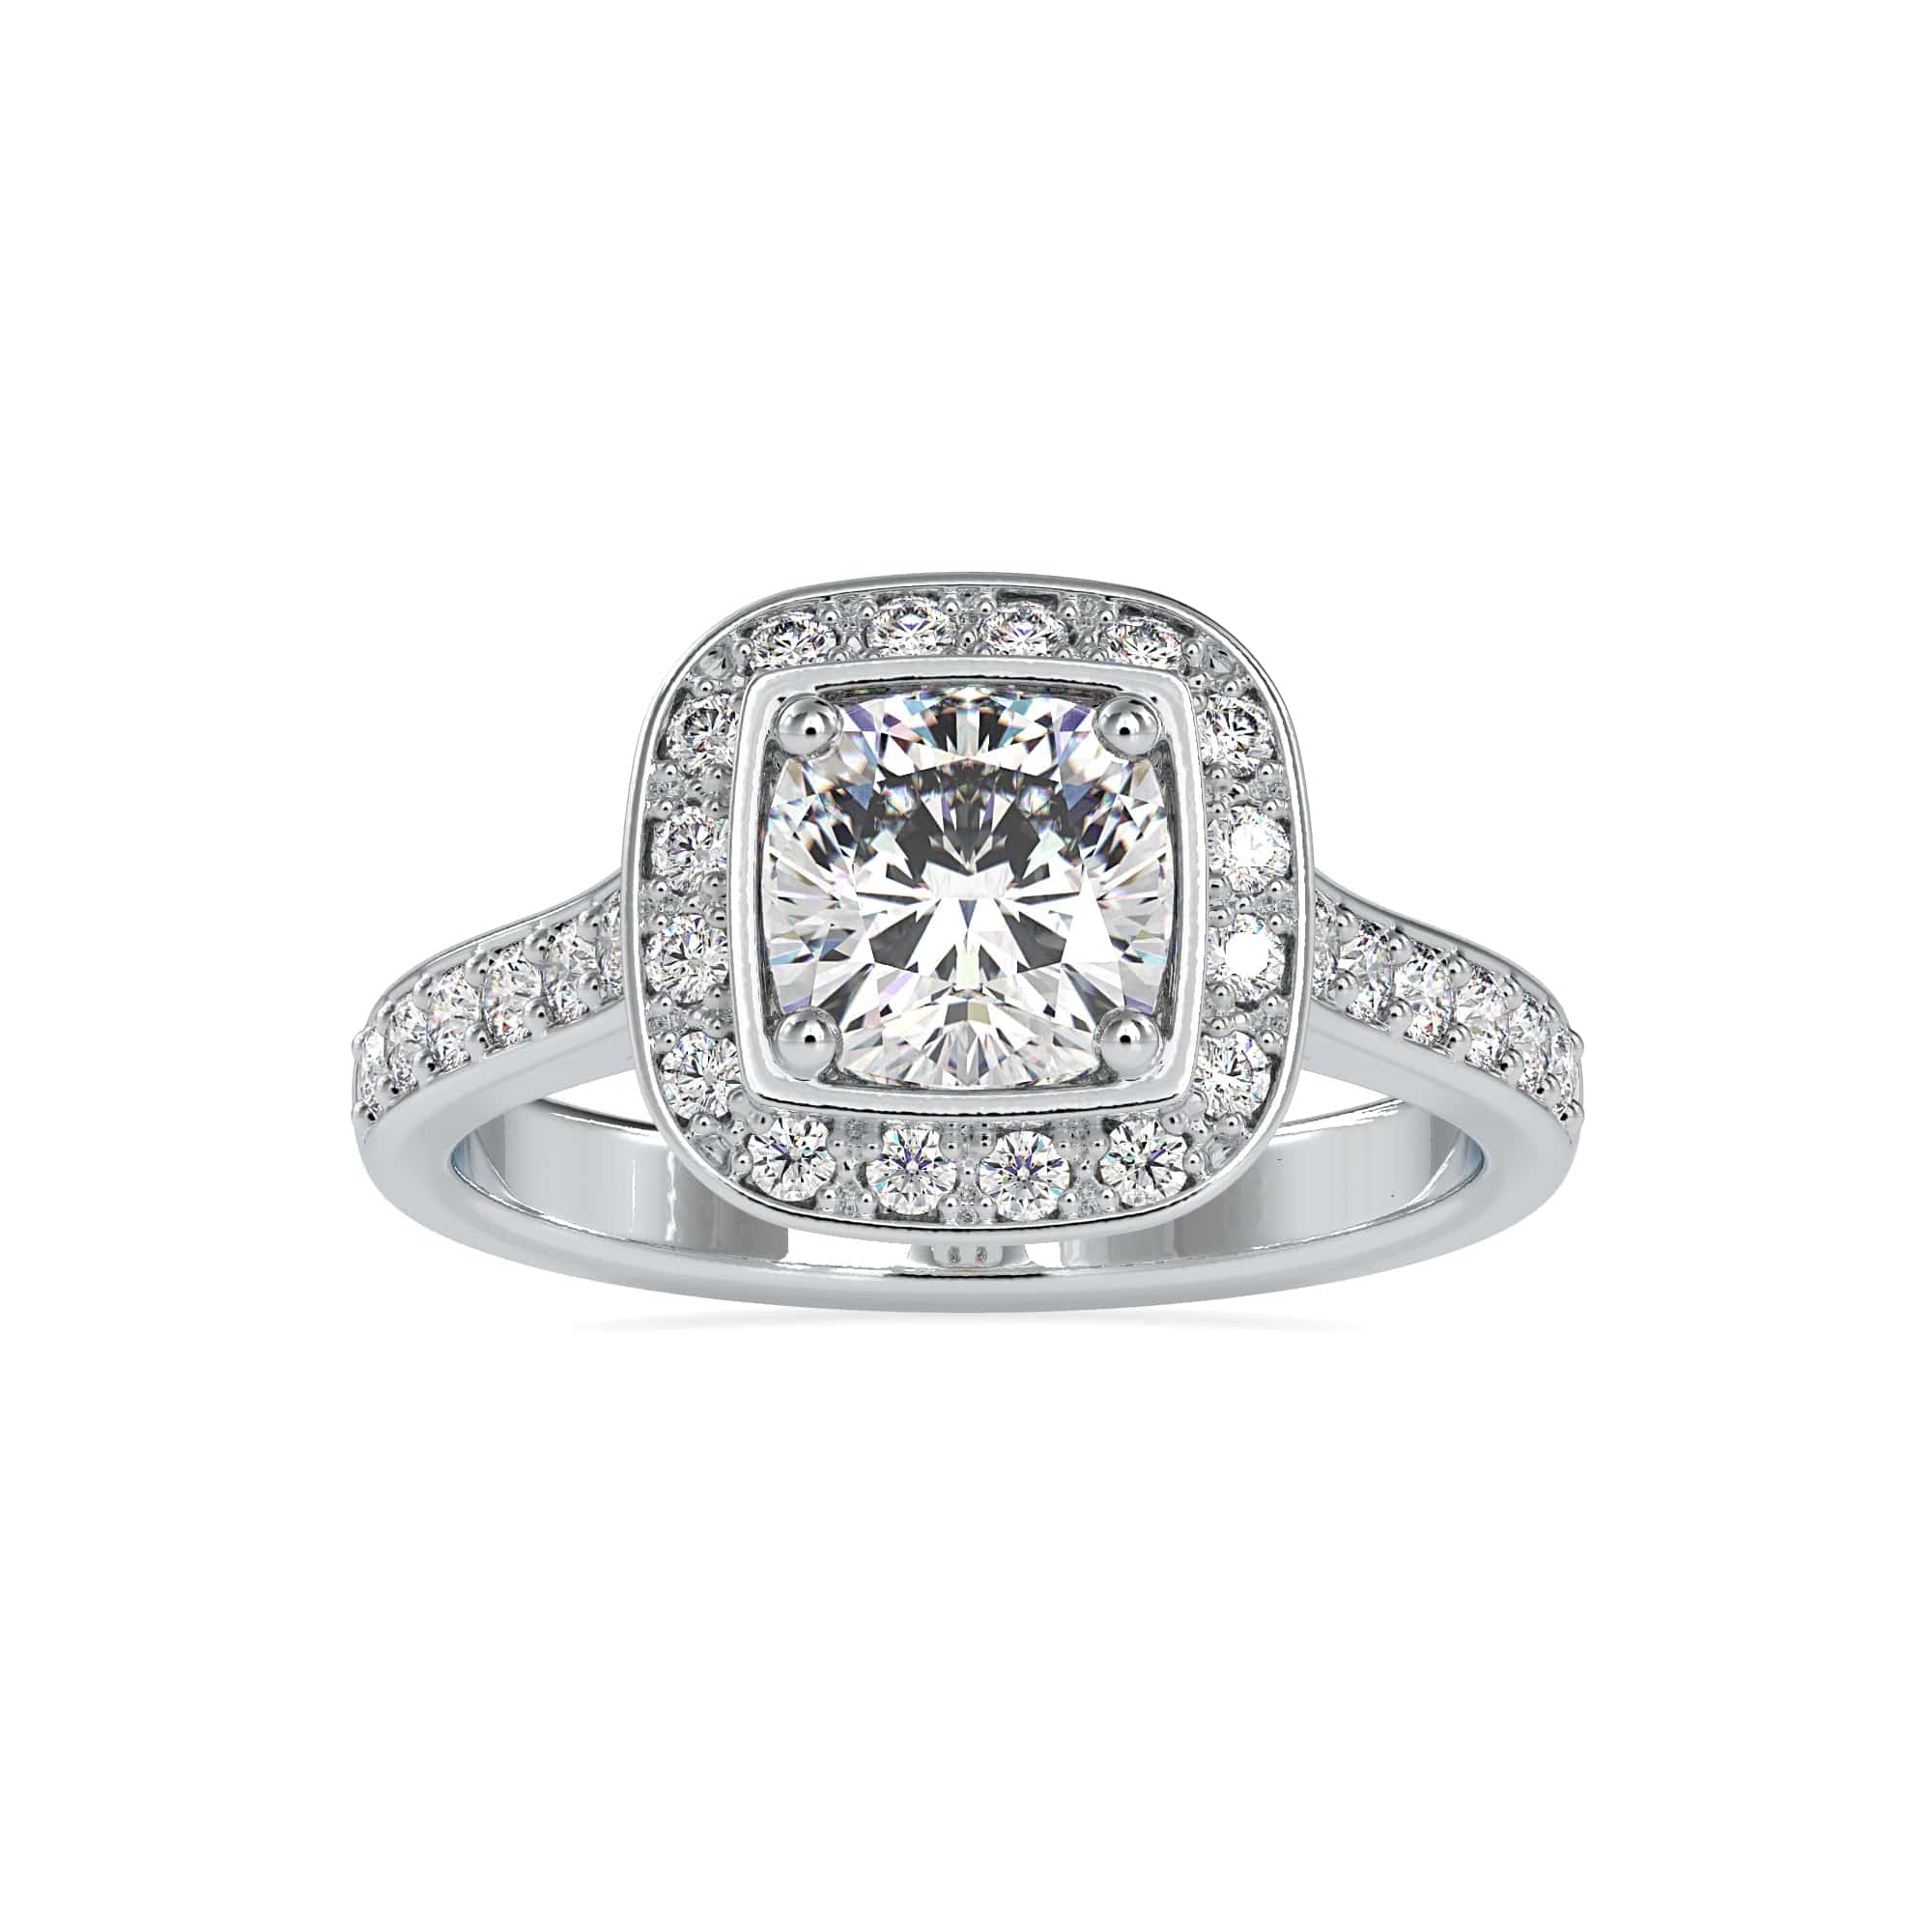 Hidden Halo/Crown on Bezel Engagement Ring? : r/Moissanite